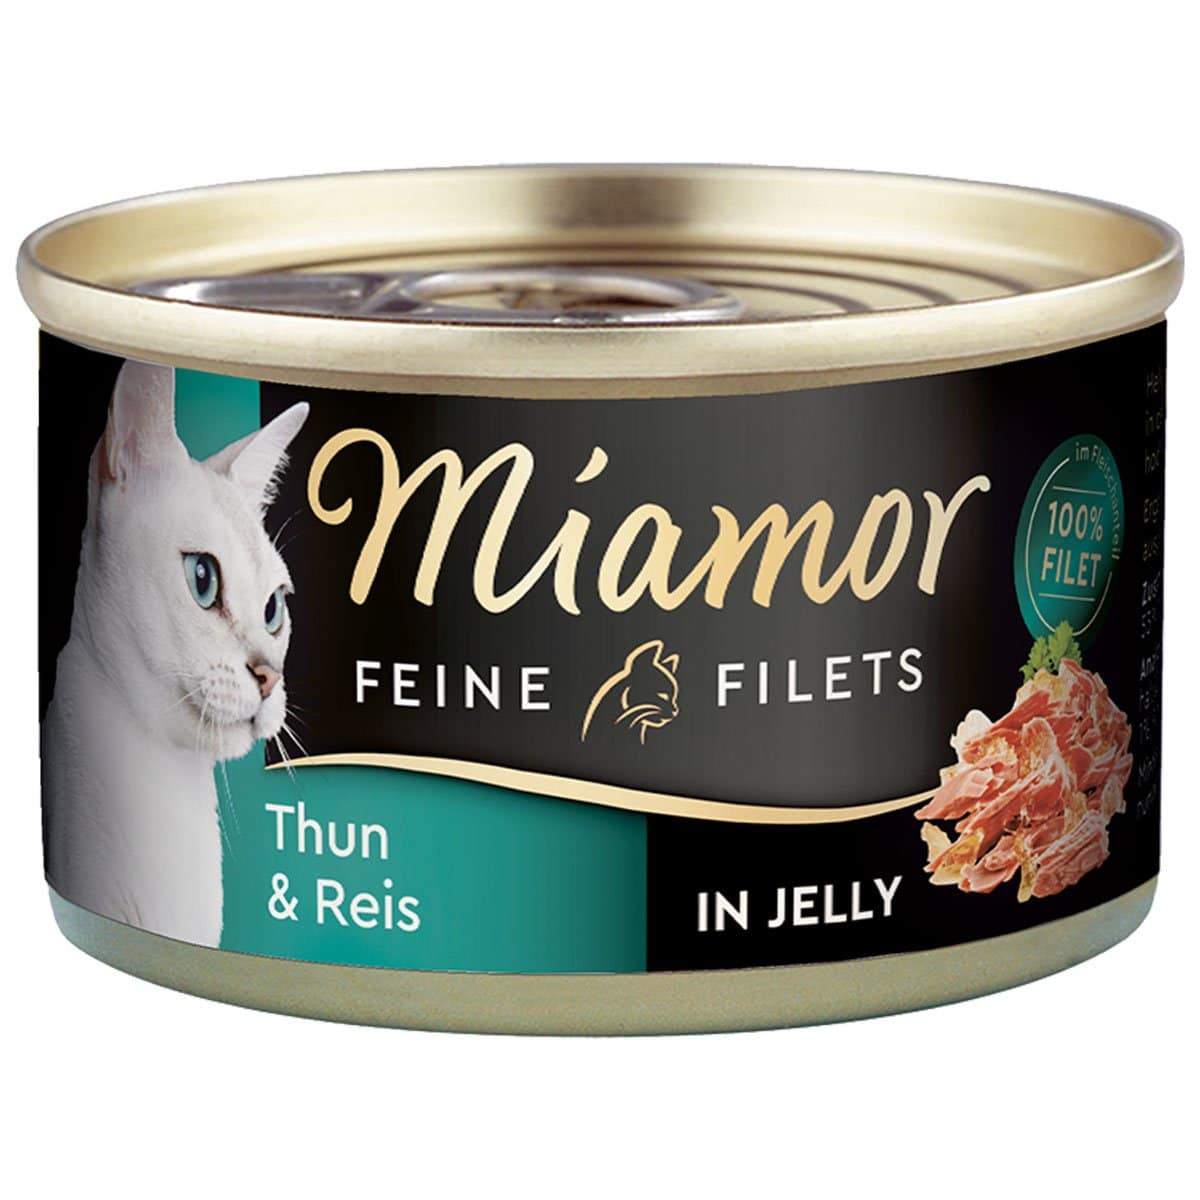 Miamor Katzenfutter Feine Filets in Jelly Thunfisch und Reis 48x100g